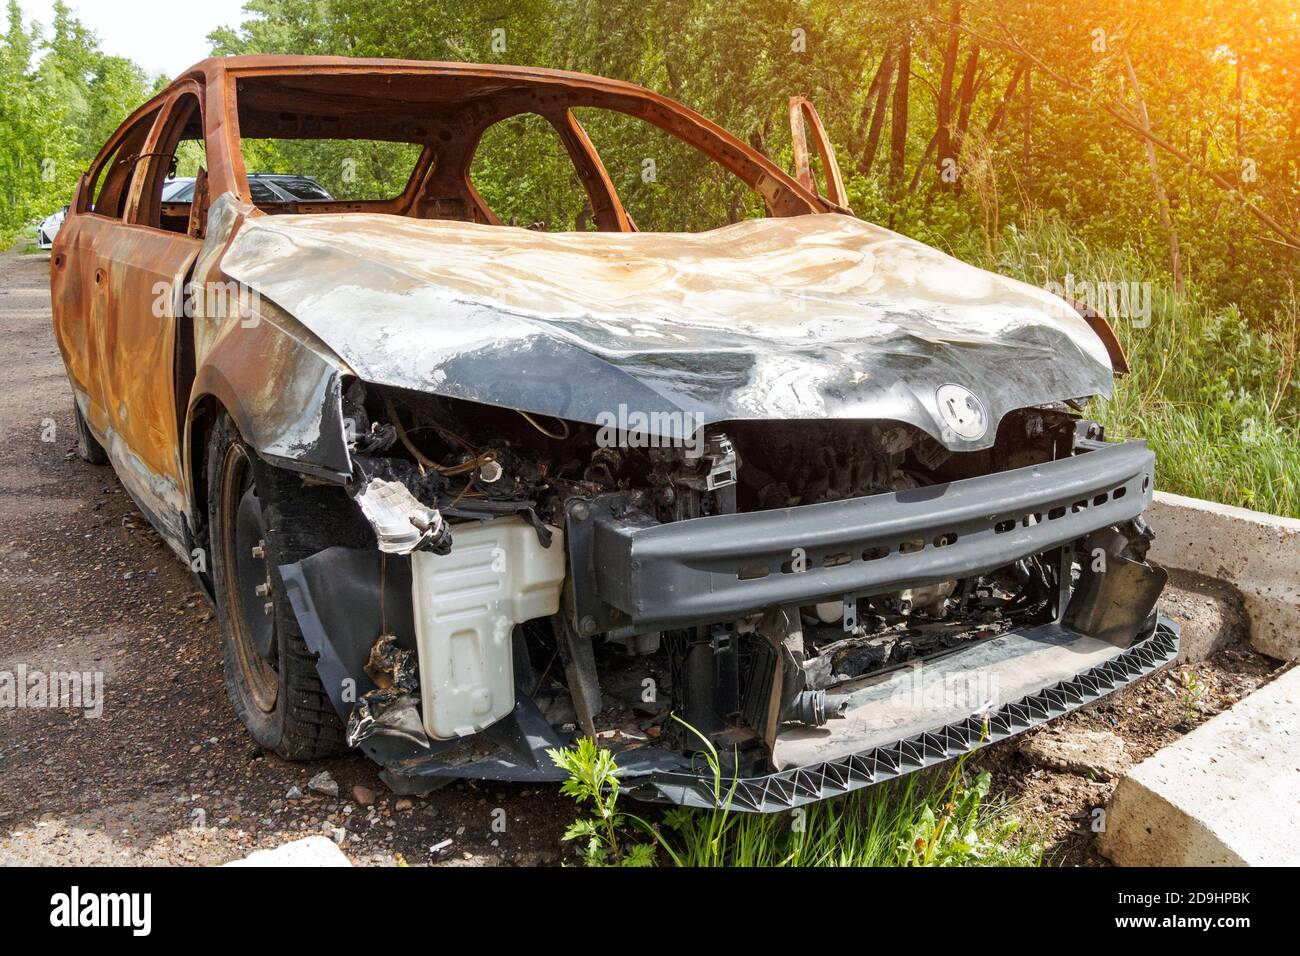 Vue de face d'une voiture de tourisme rouillée brûlée le jour de l'été, pare-chocs manquant, capot froissé. Banque D'Images